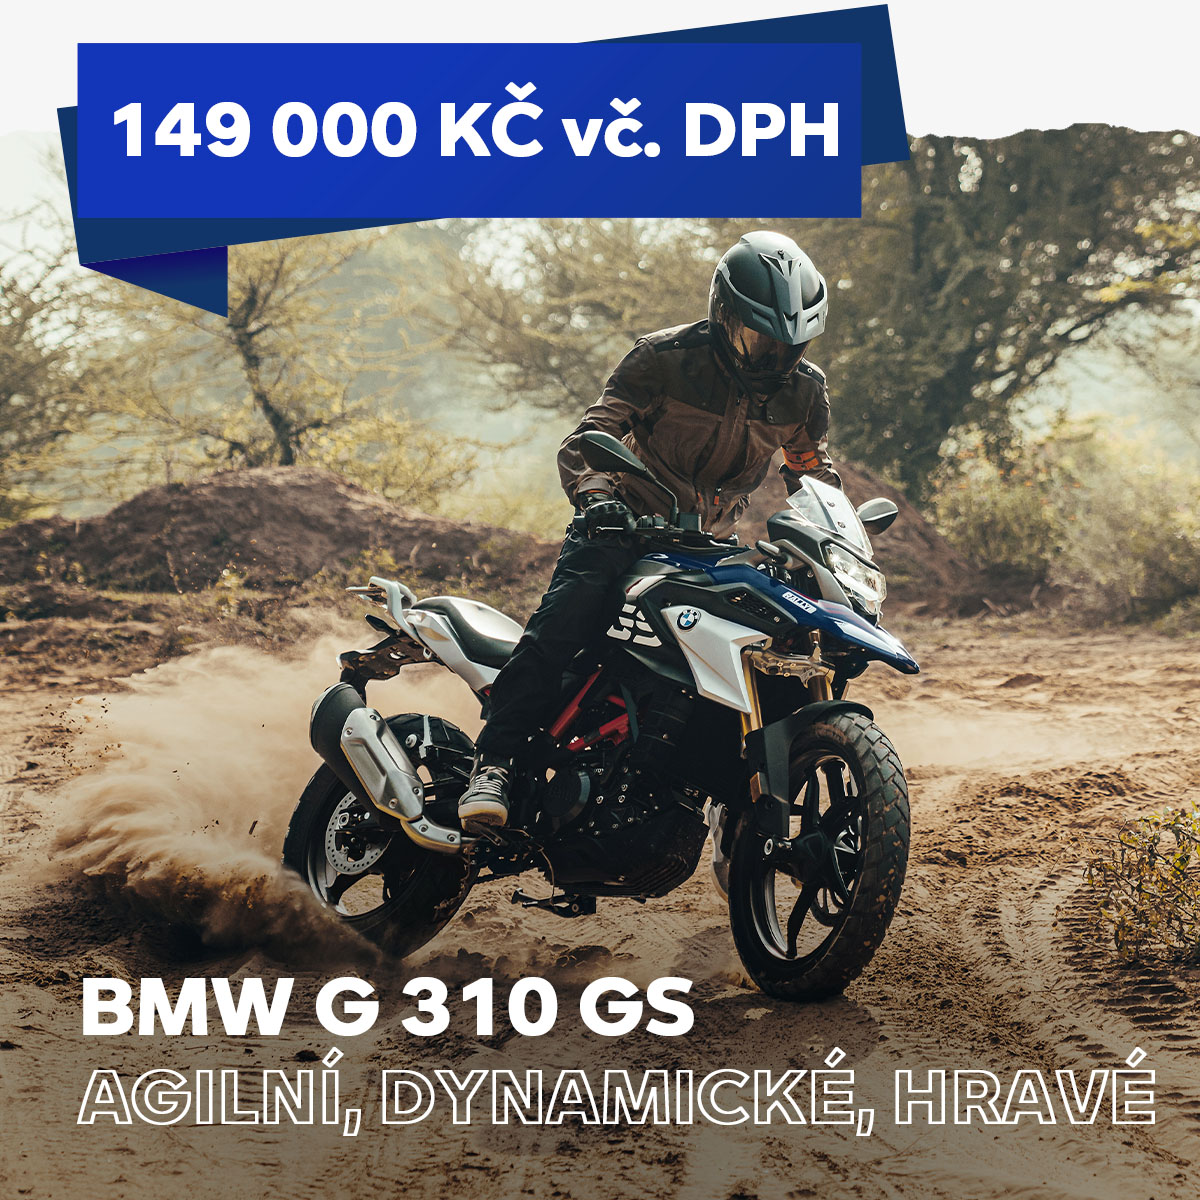 BMW G 310 ZA 129.000 KČ VČ. DPH